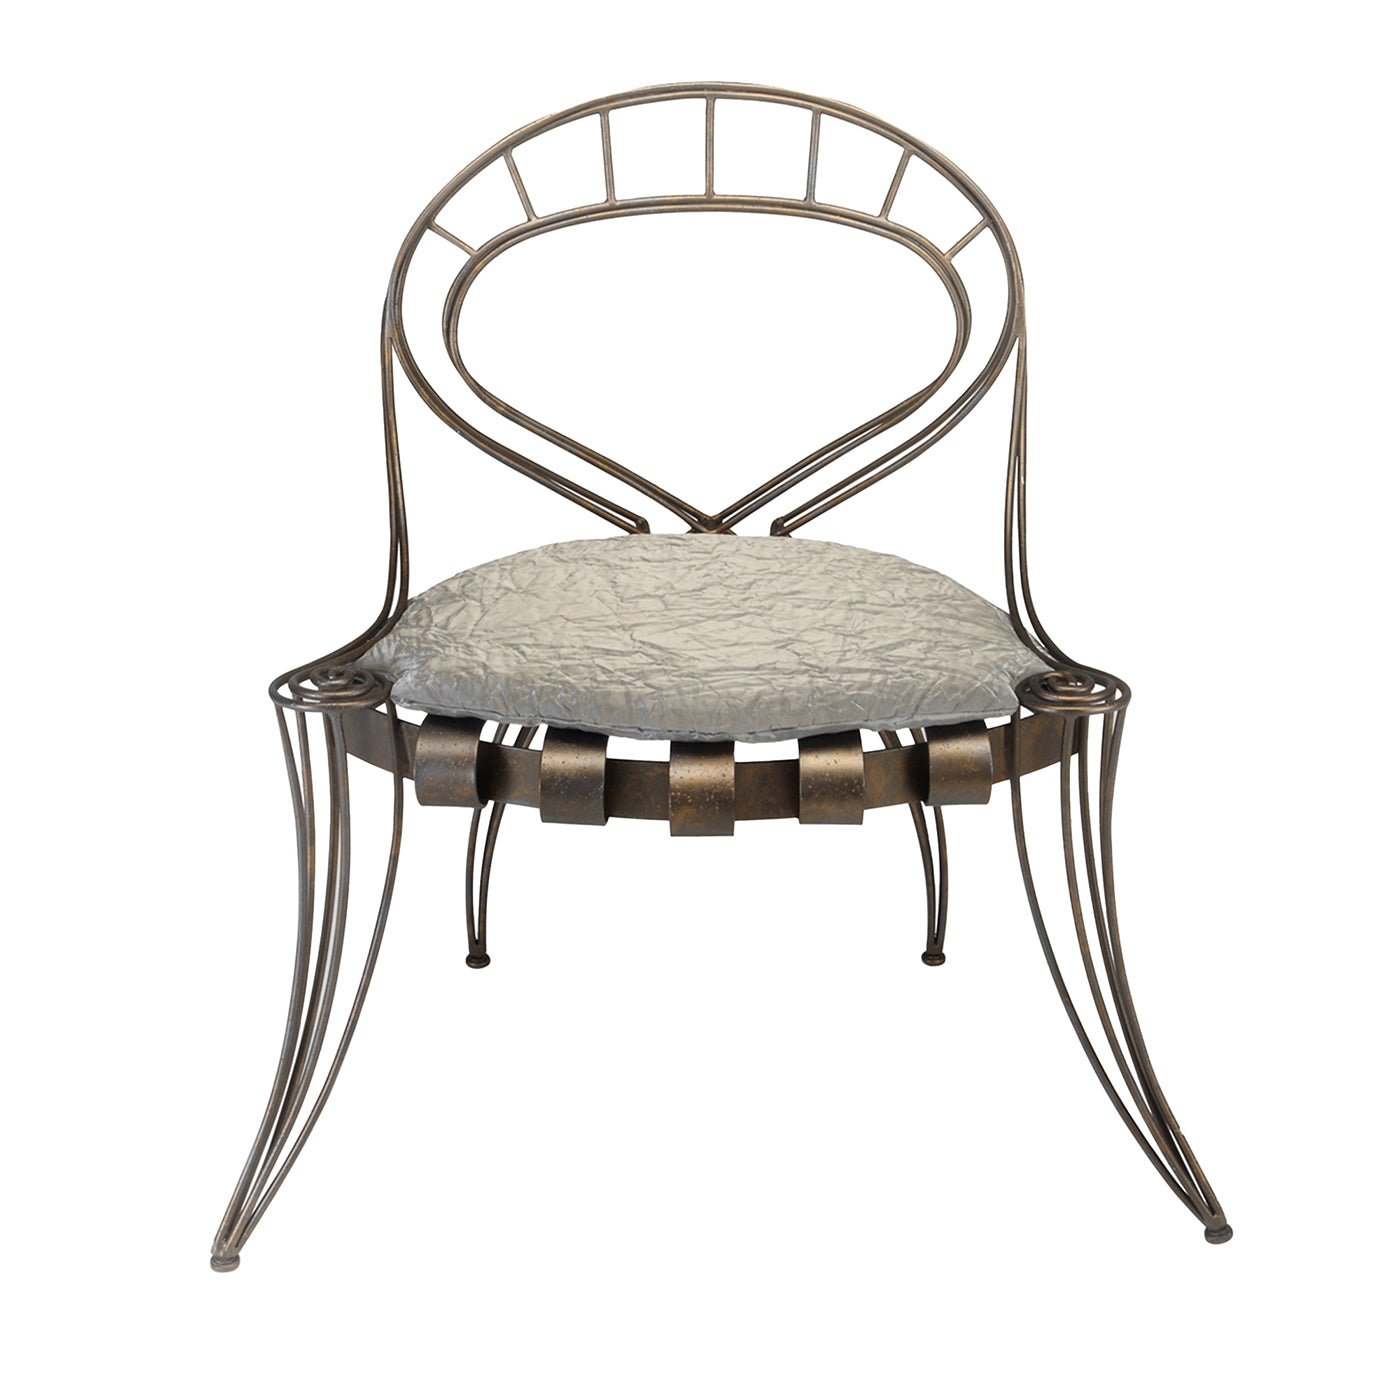 Opus Garden Chair by Carlo Rampazzi - Main view